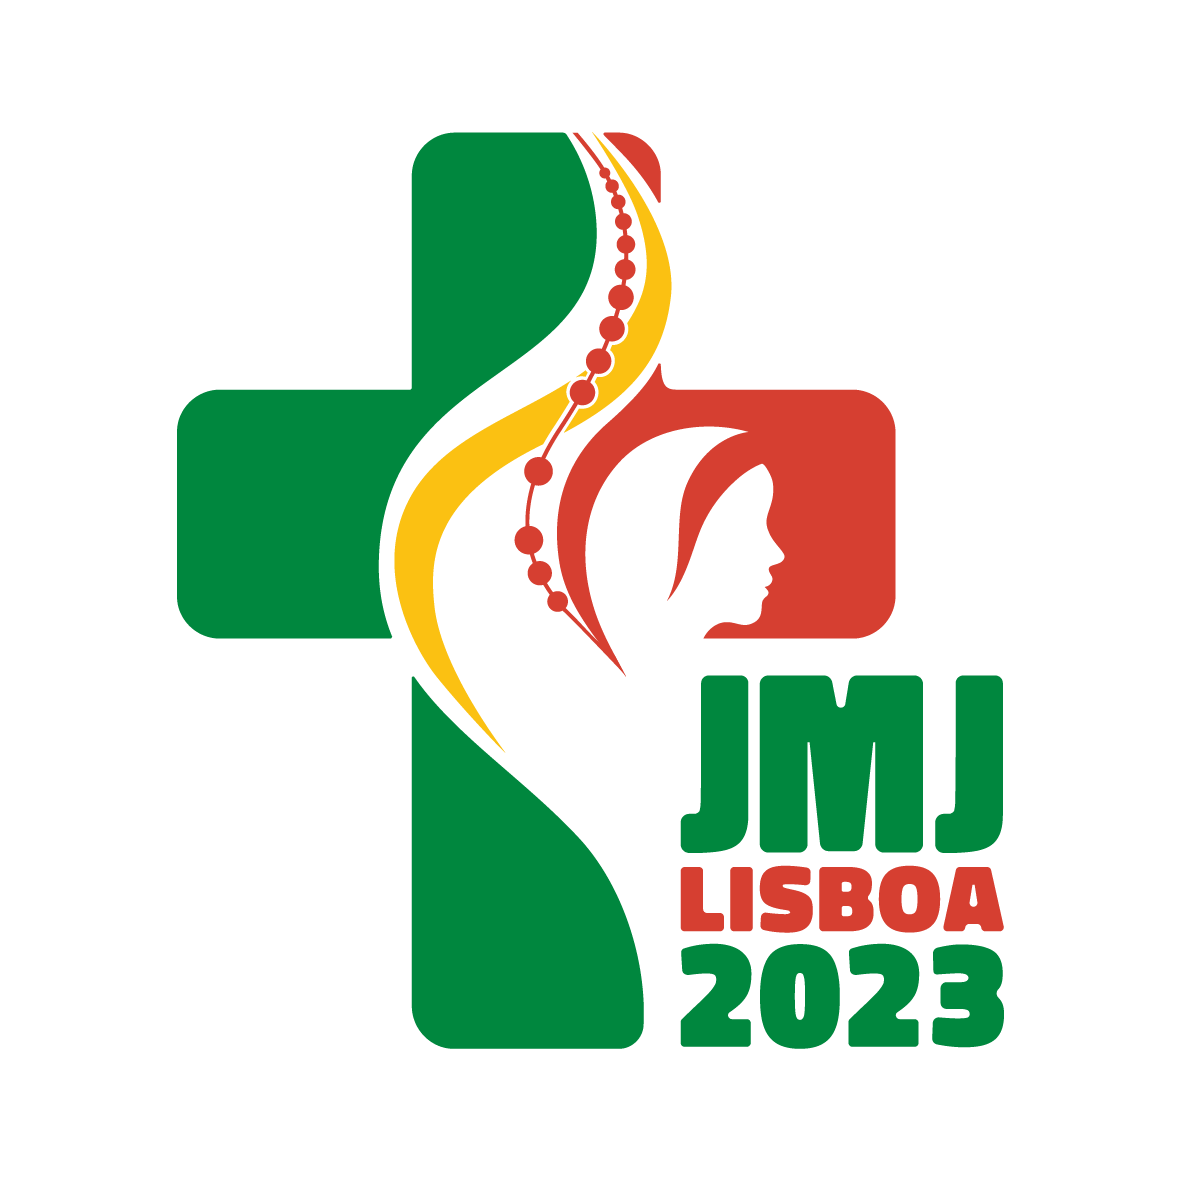 logo JMJ